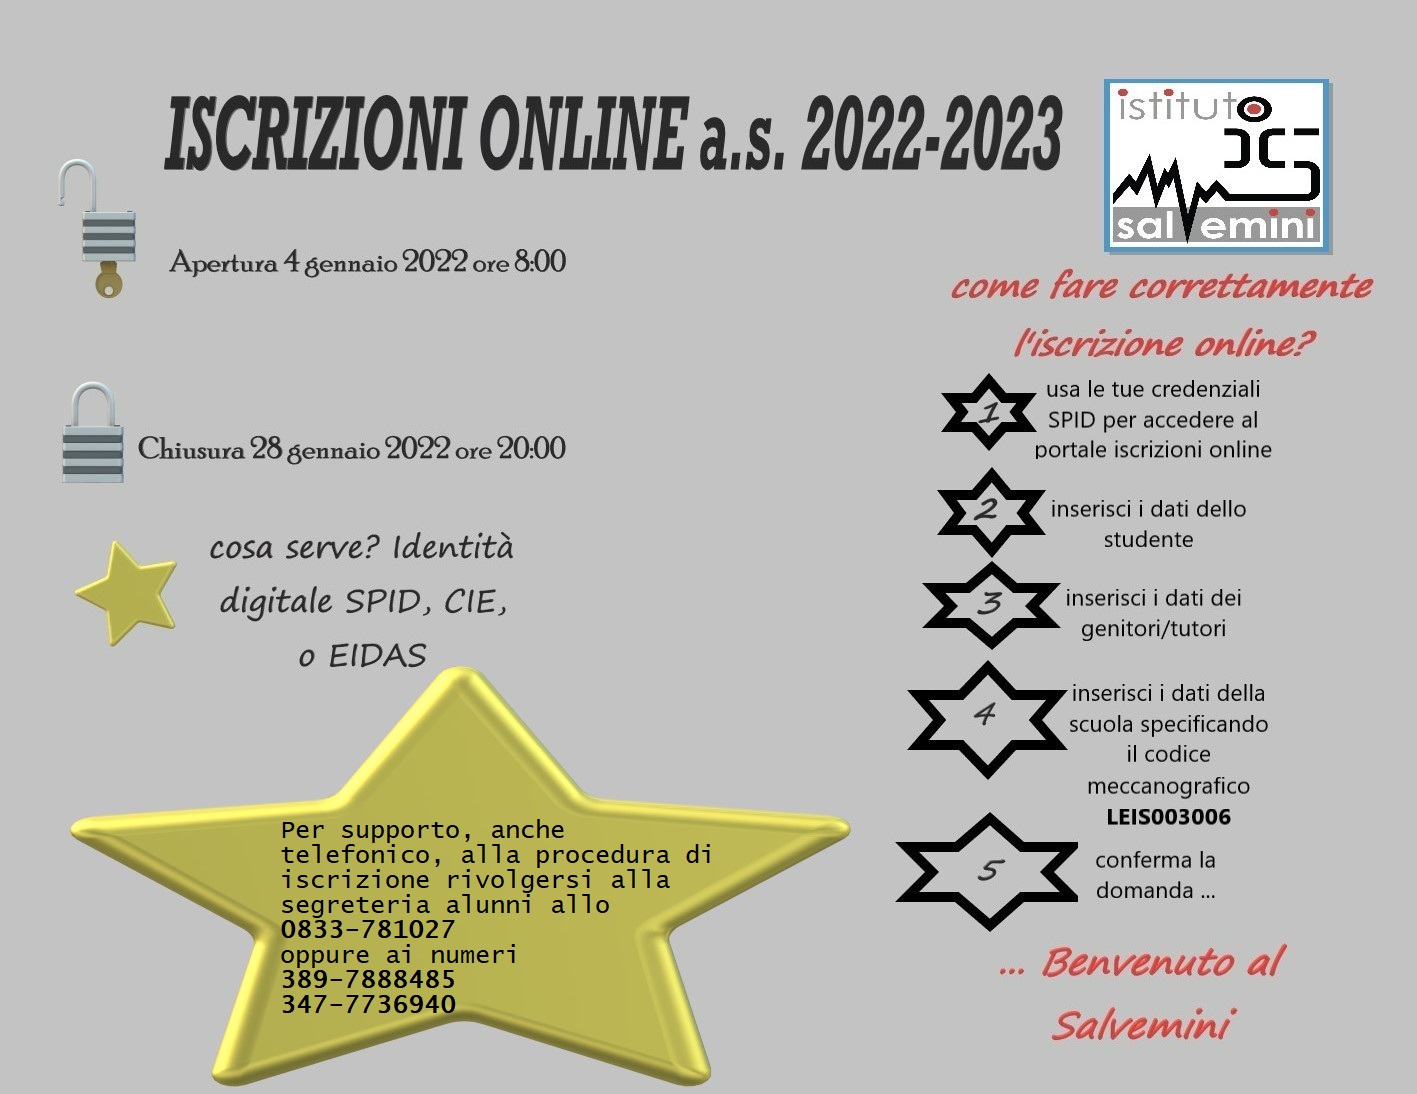 Iscrizioni online a.s. 2022-2023